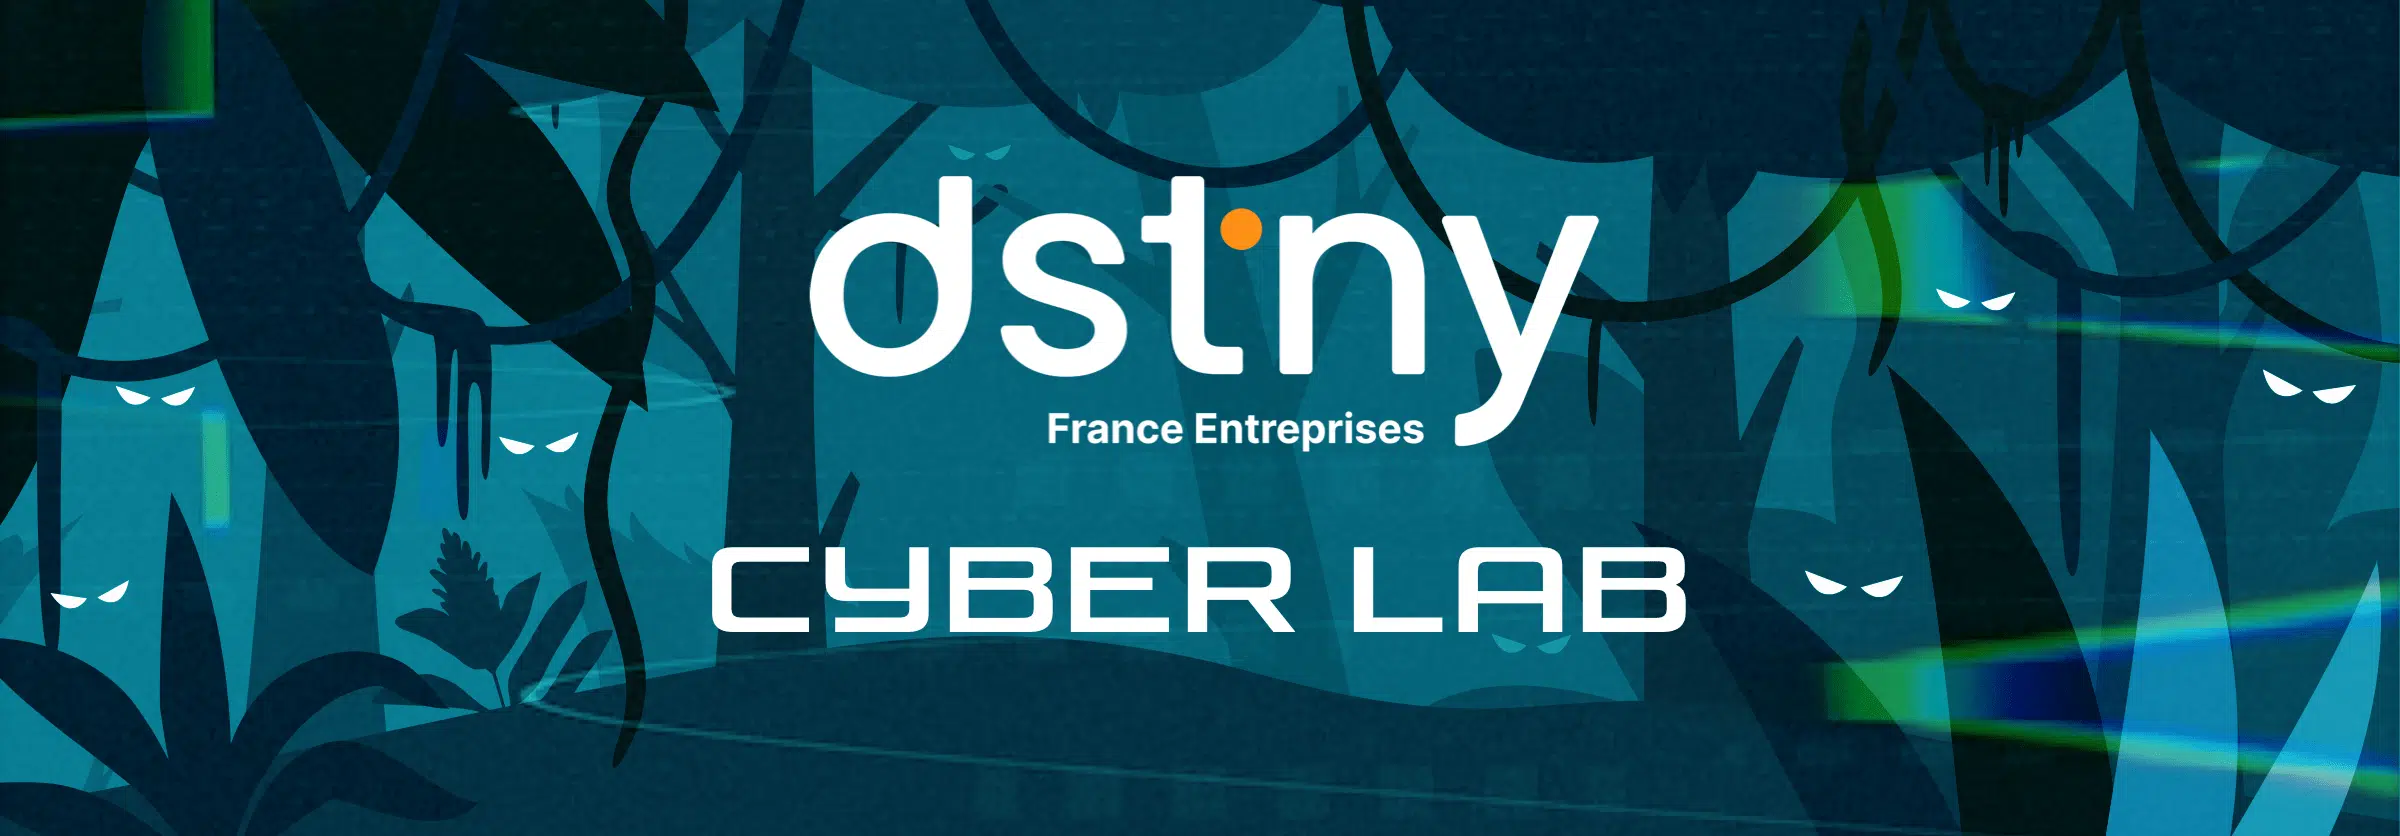 Cyber Lab - Frayez-vous un chemin à travers les cyber menaces ! - Dstny France